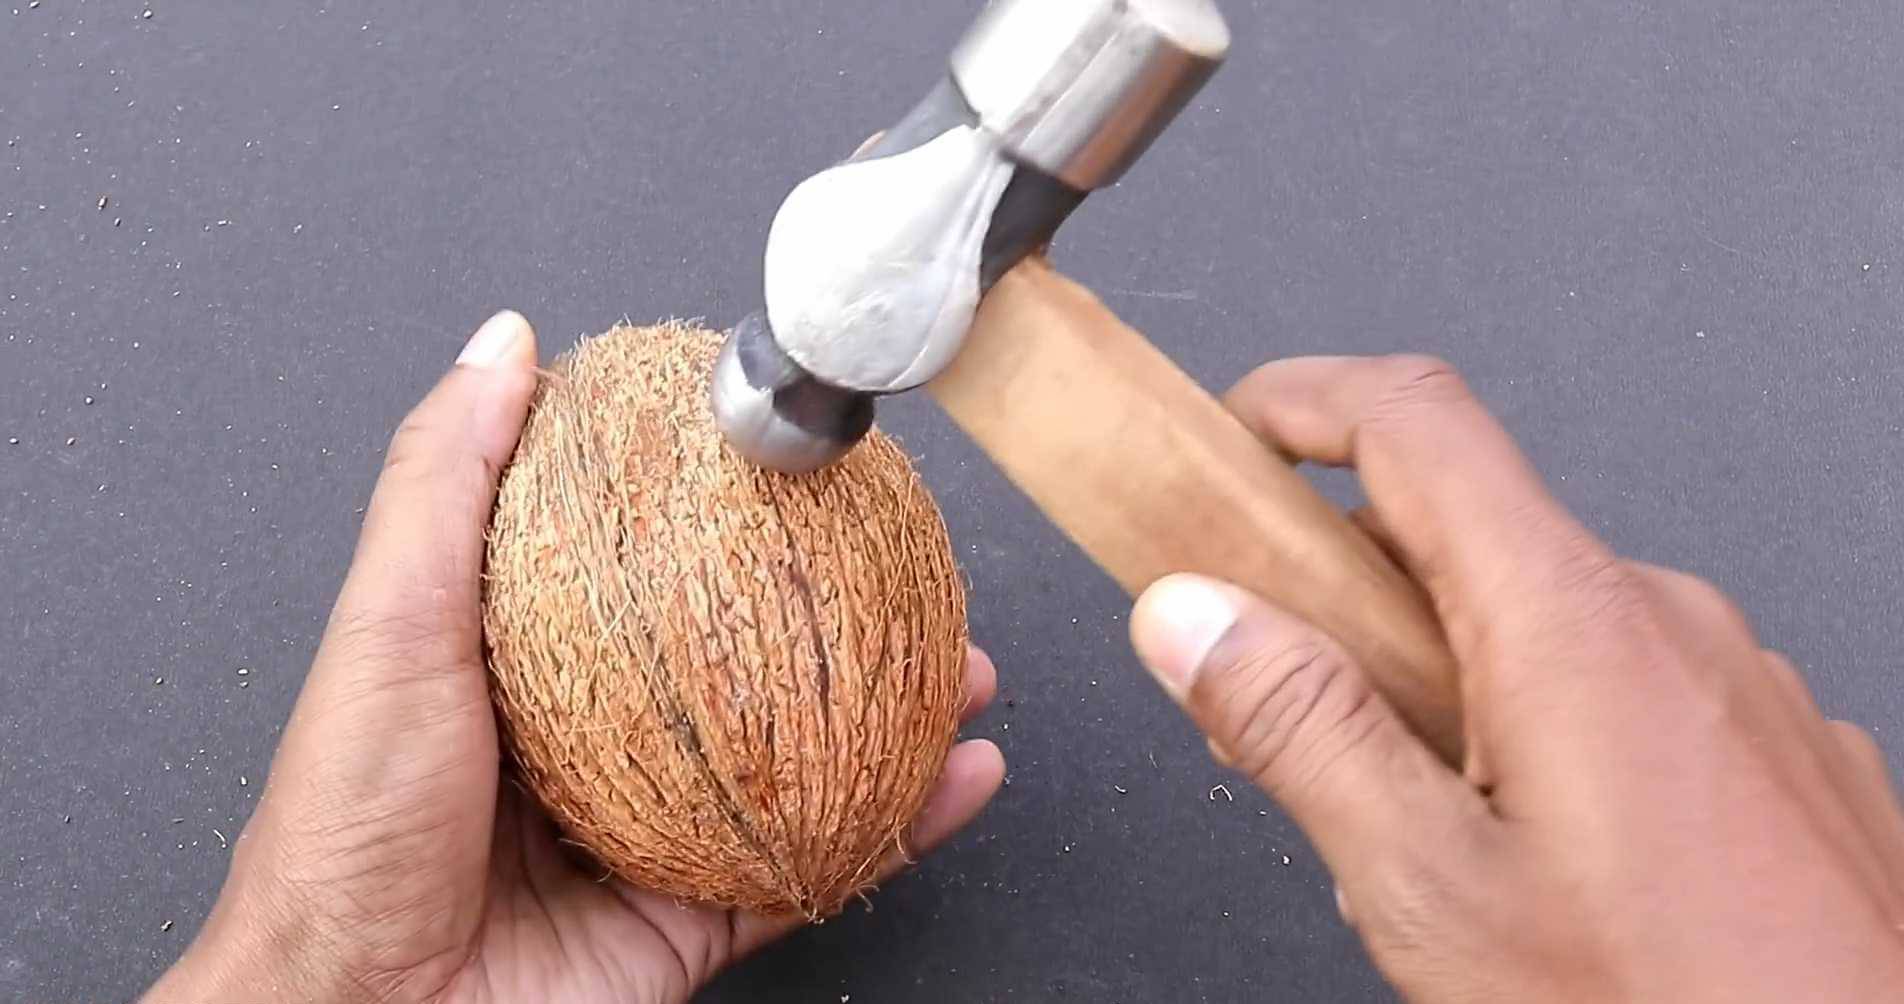 Как открыть кокос? Срок годности кокоса